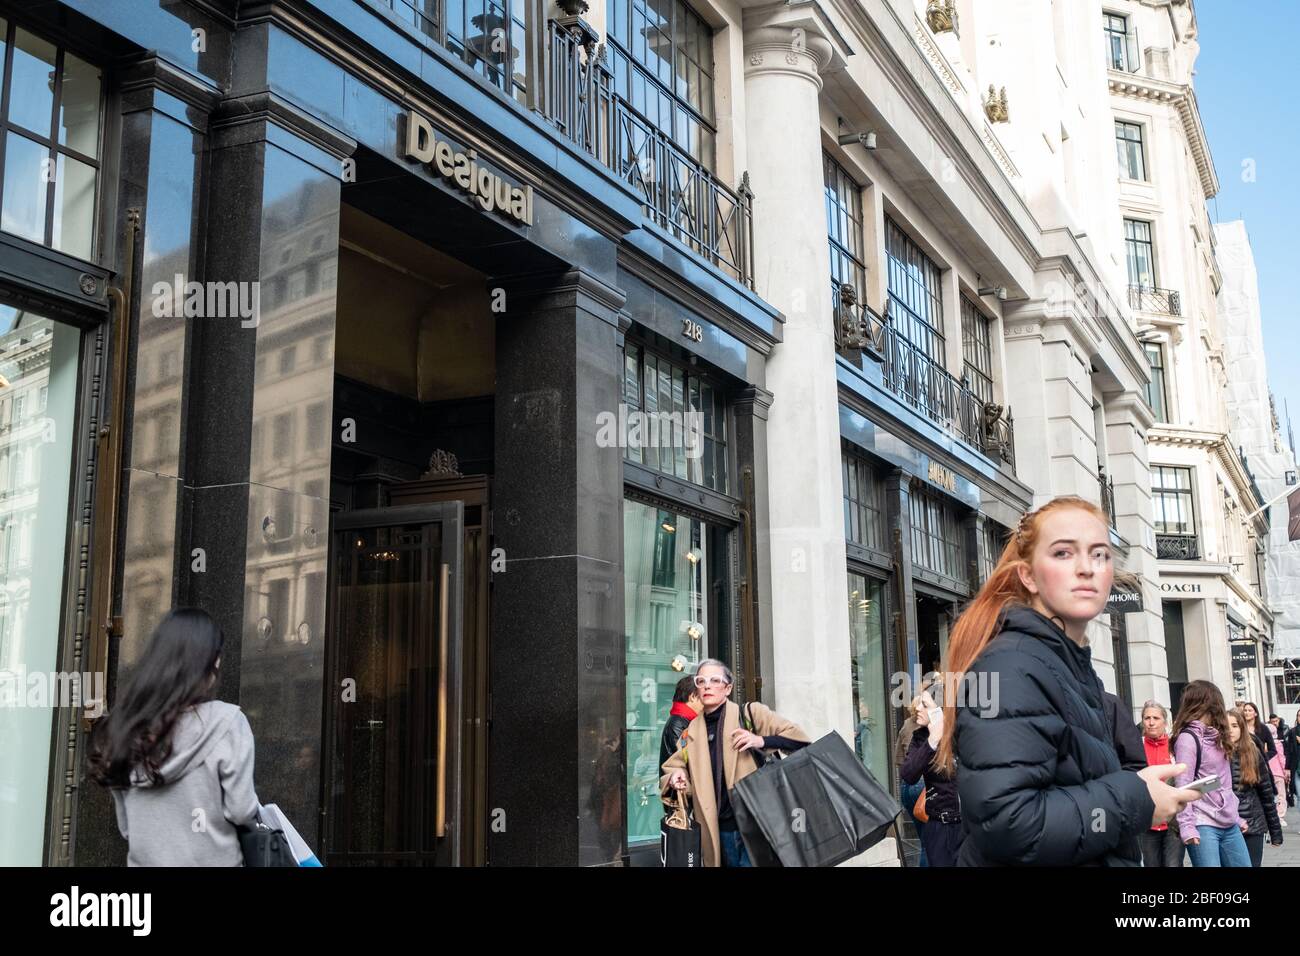 Londra - gli amanti dello shopping camminano su Regent Street, una destinazione di riferimento famosa per i suoi molti marchi di moda Foto Stock